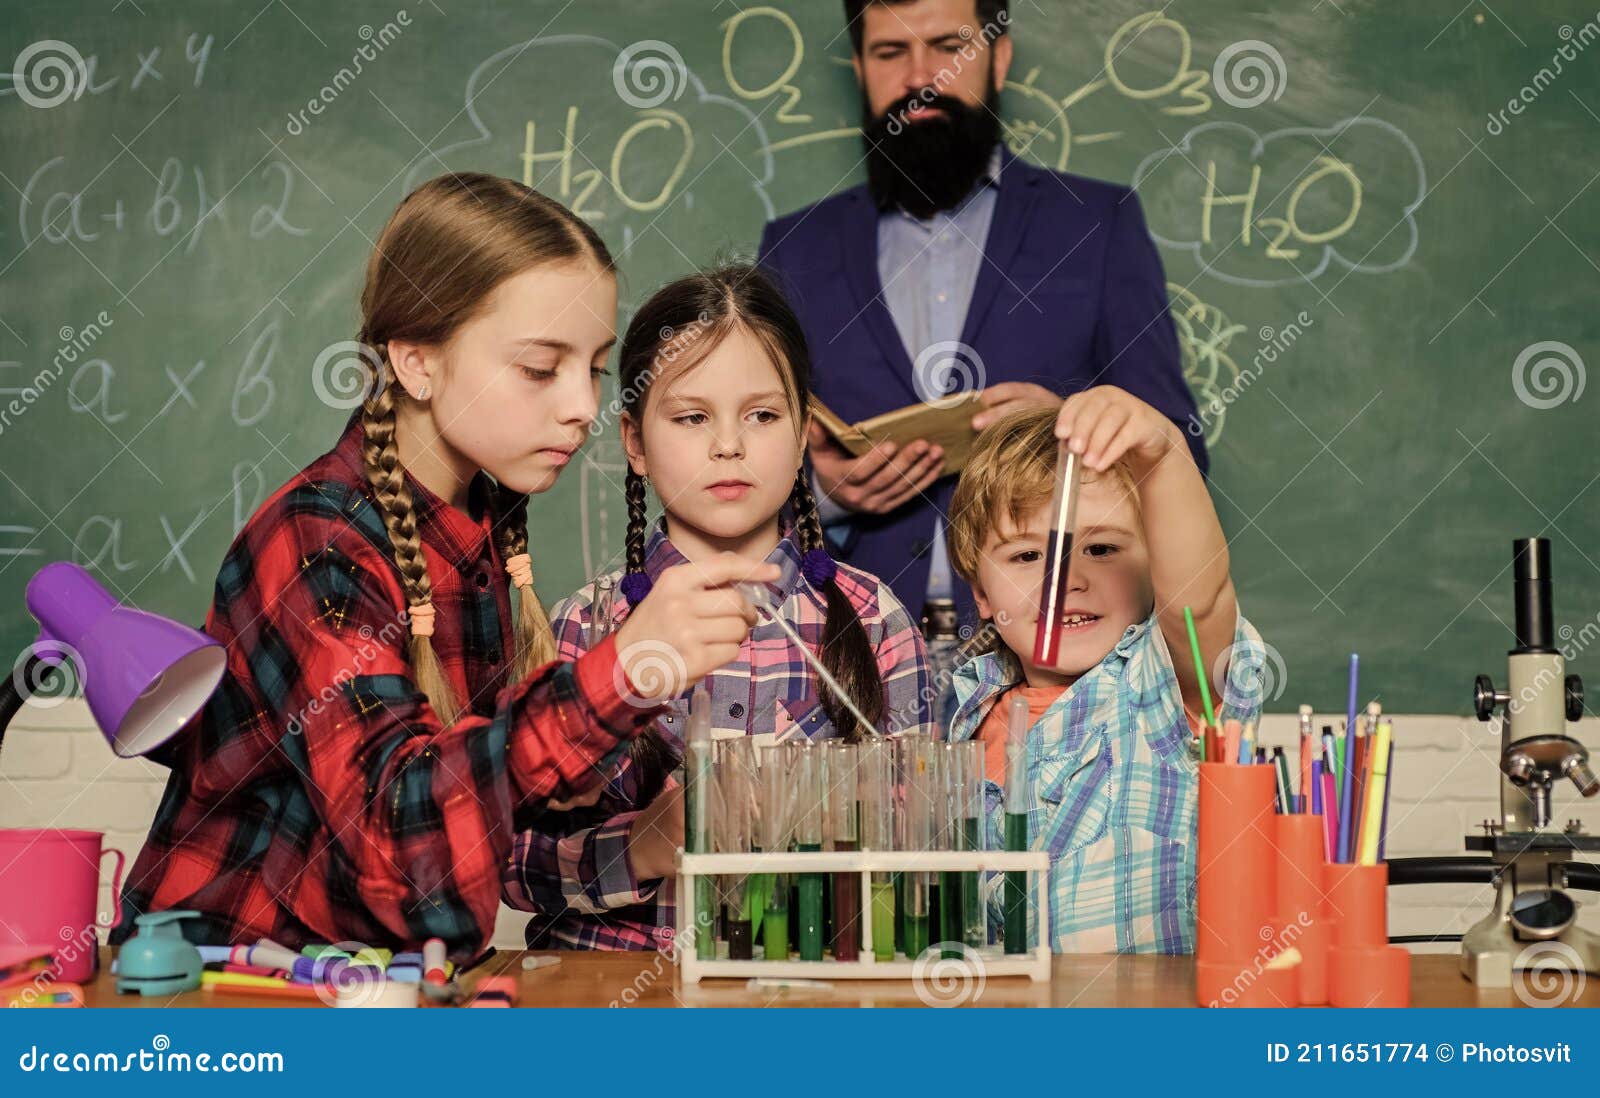 Deux enfants faisant des expériences scientifiques en classe